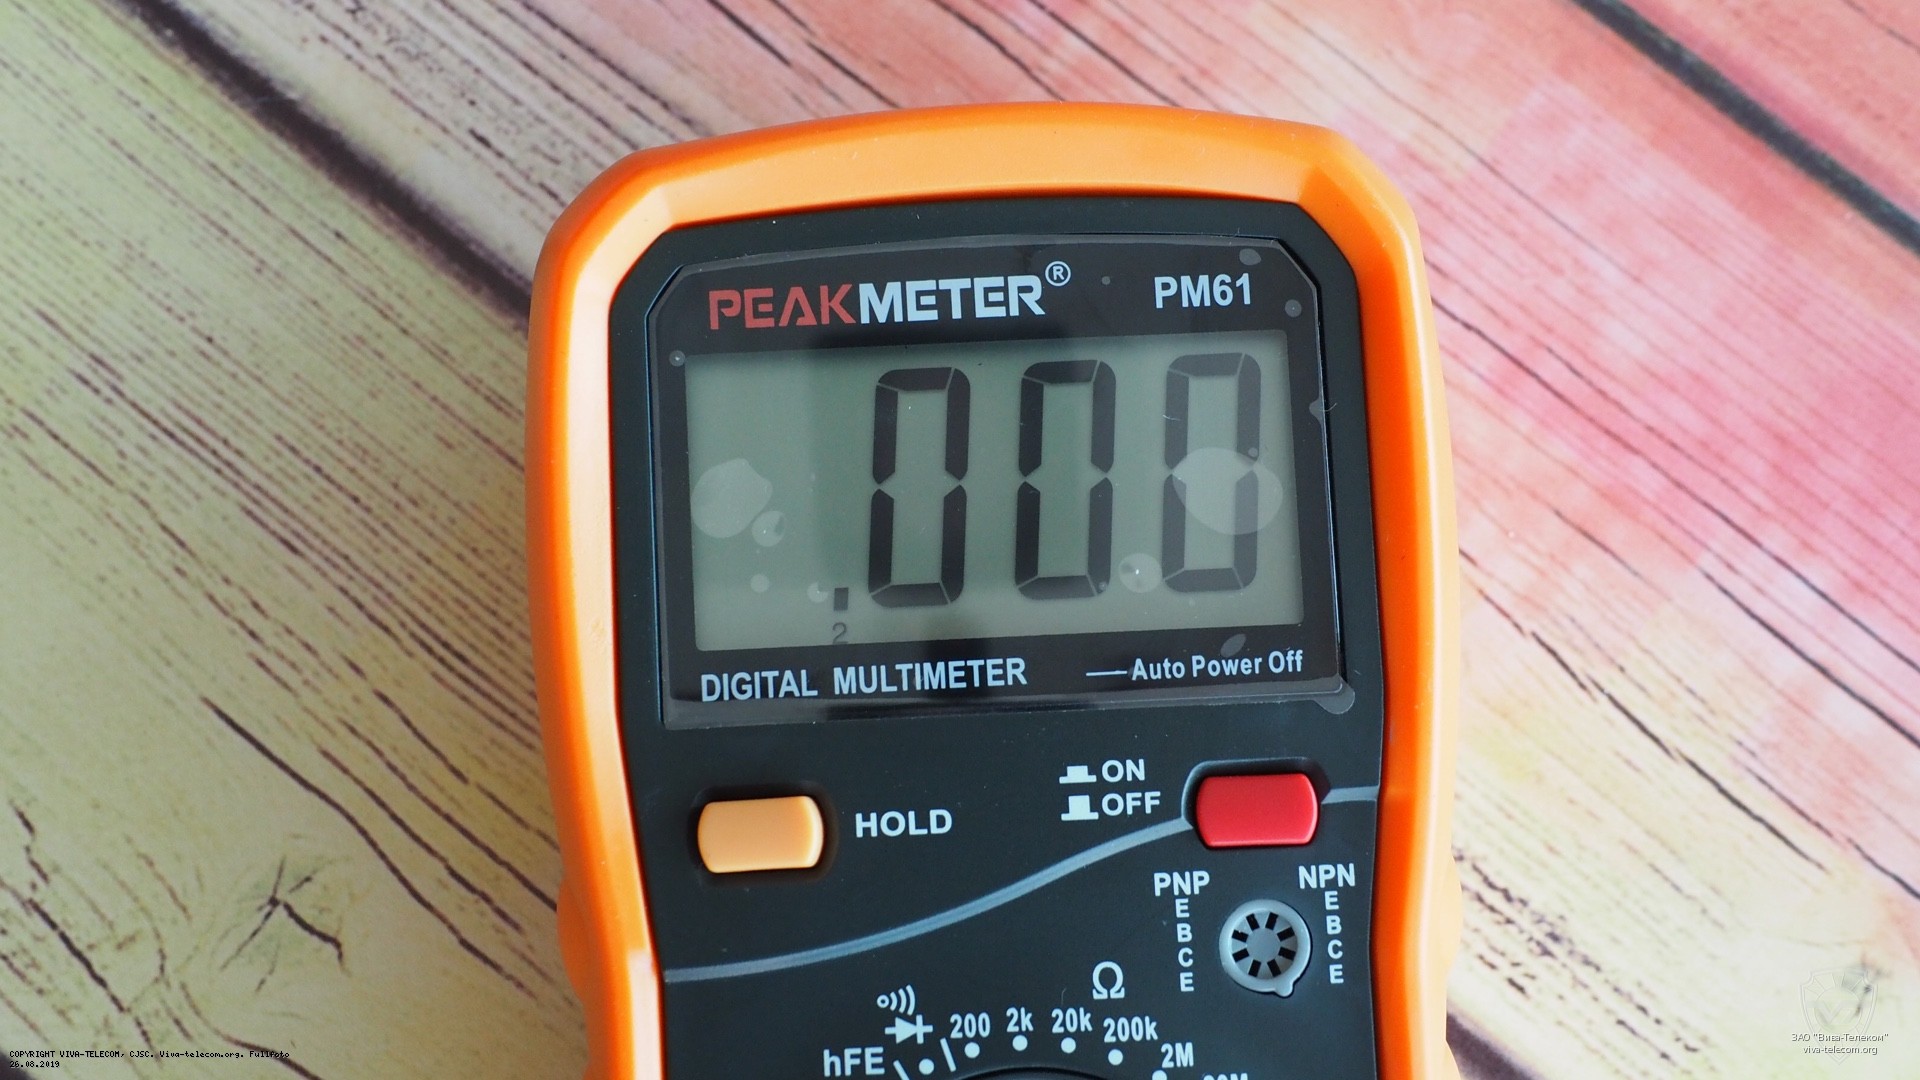   PeakMeter PM61